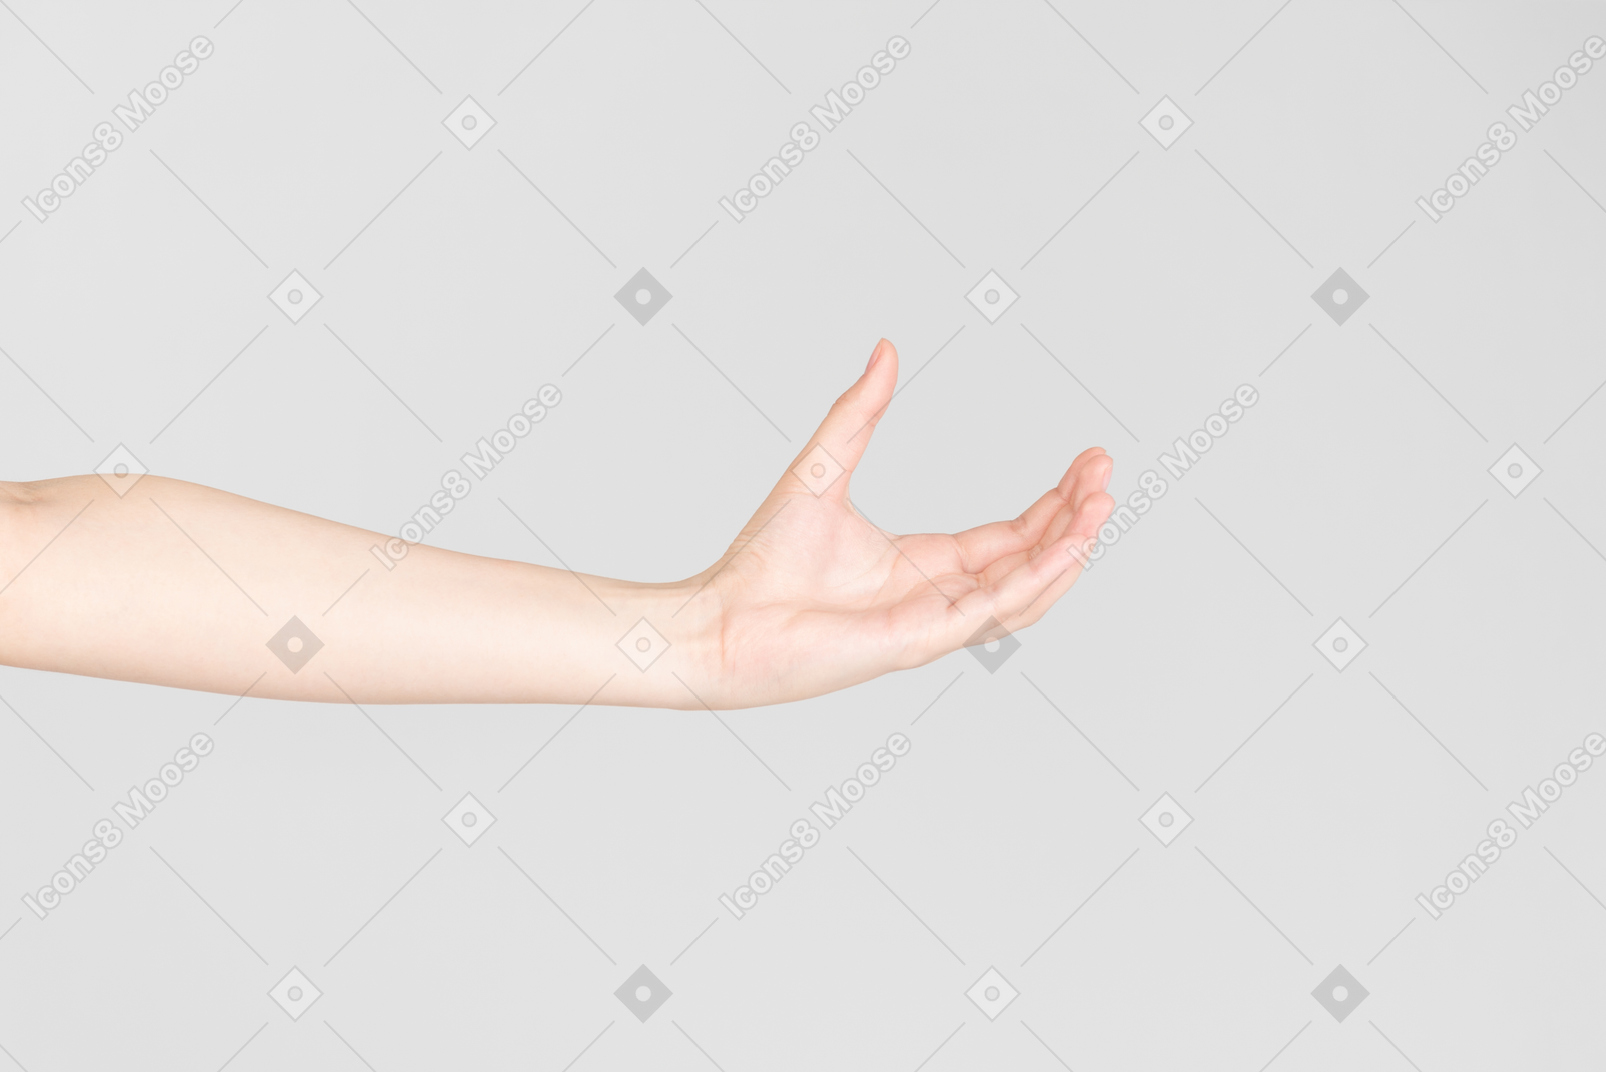 Regard de côté de la main féminine avec la main ouverte